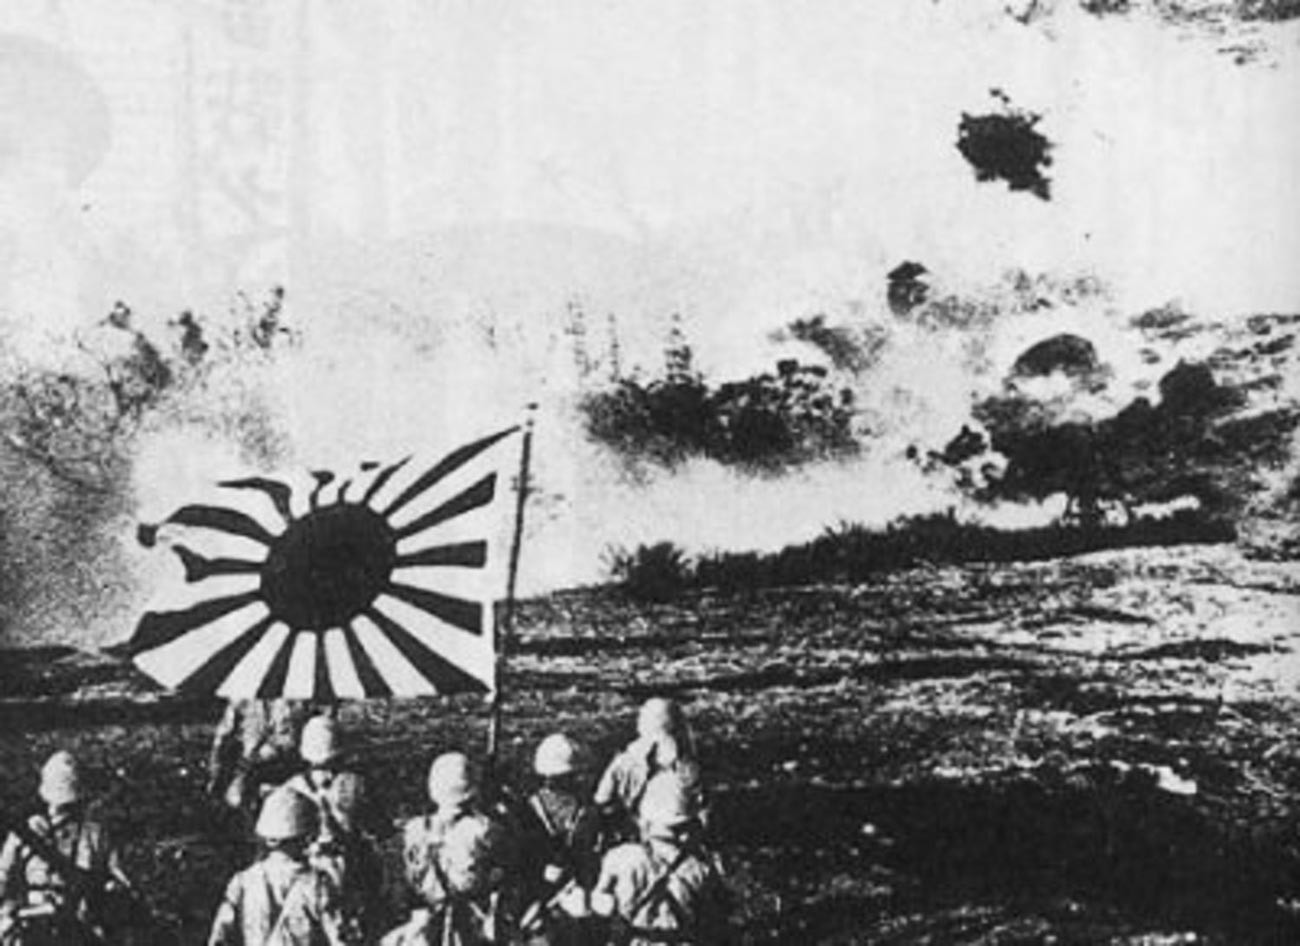 Pasukan pendaratan angkatan laut Jepang meledakkan pos penjagaan bawah tanah Tiongkok selama Operasi Kanton.